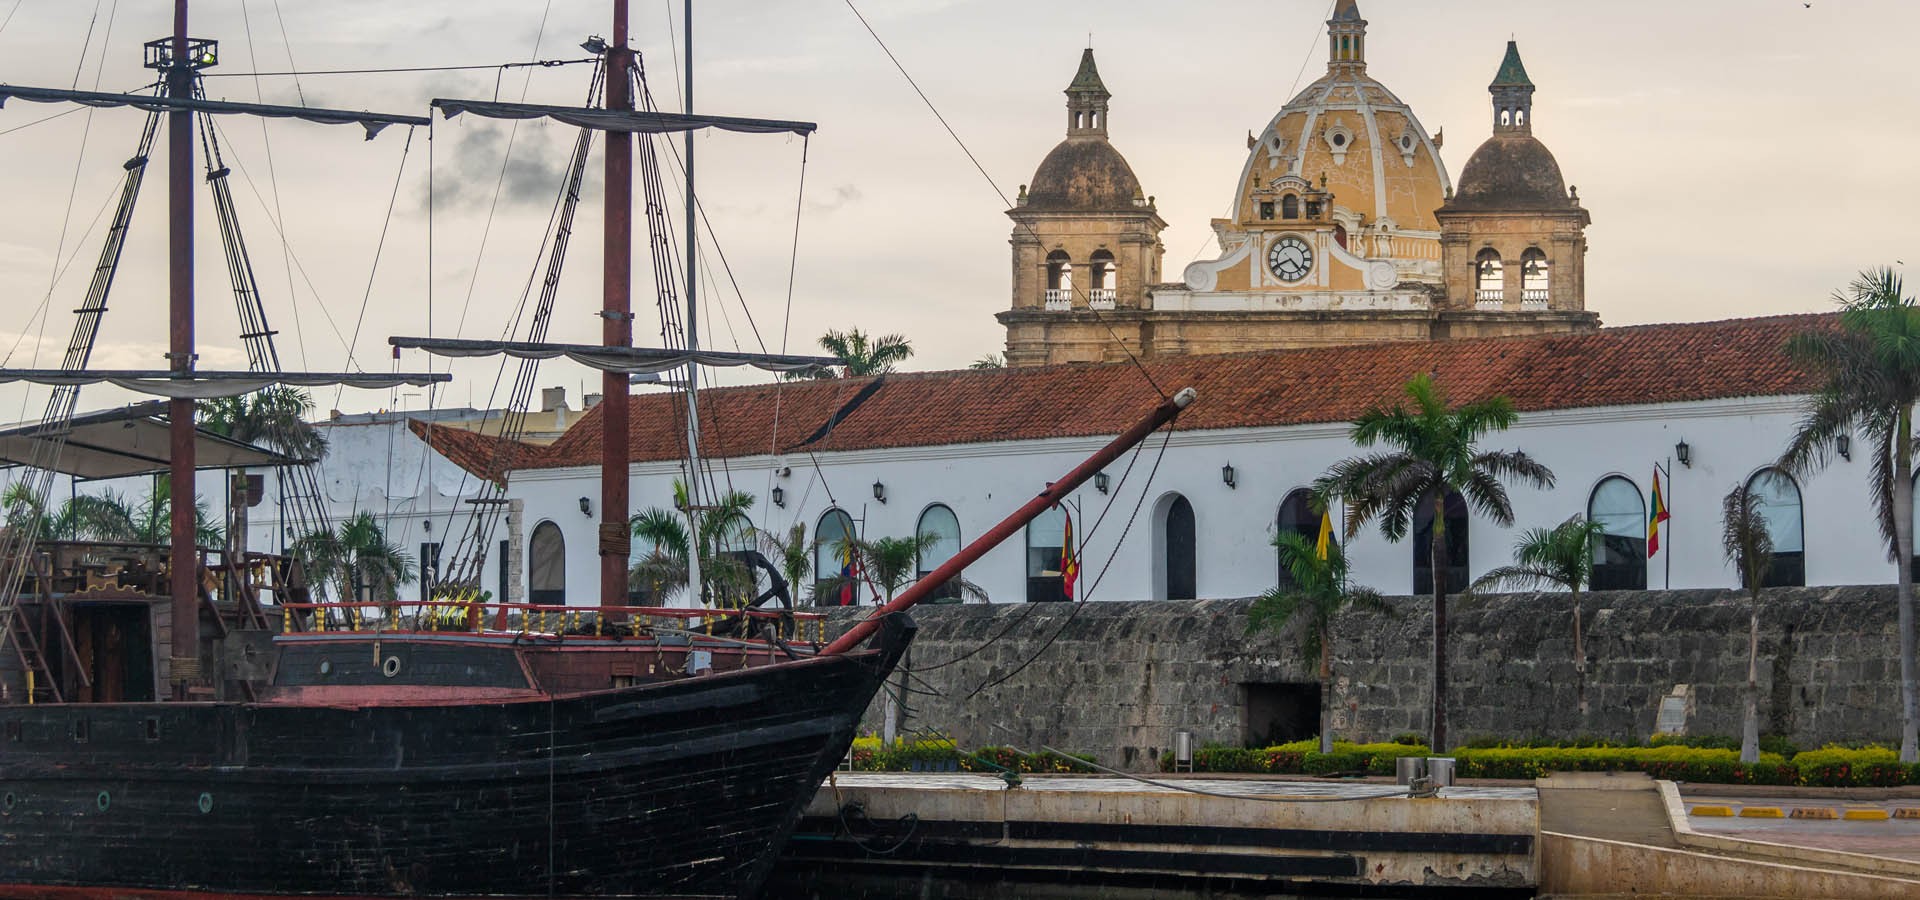 Qué hacer en Cartagena de Indias